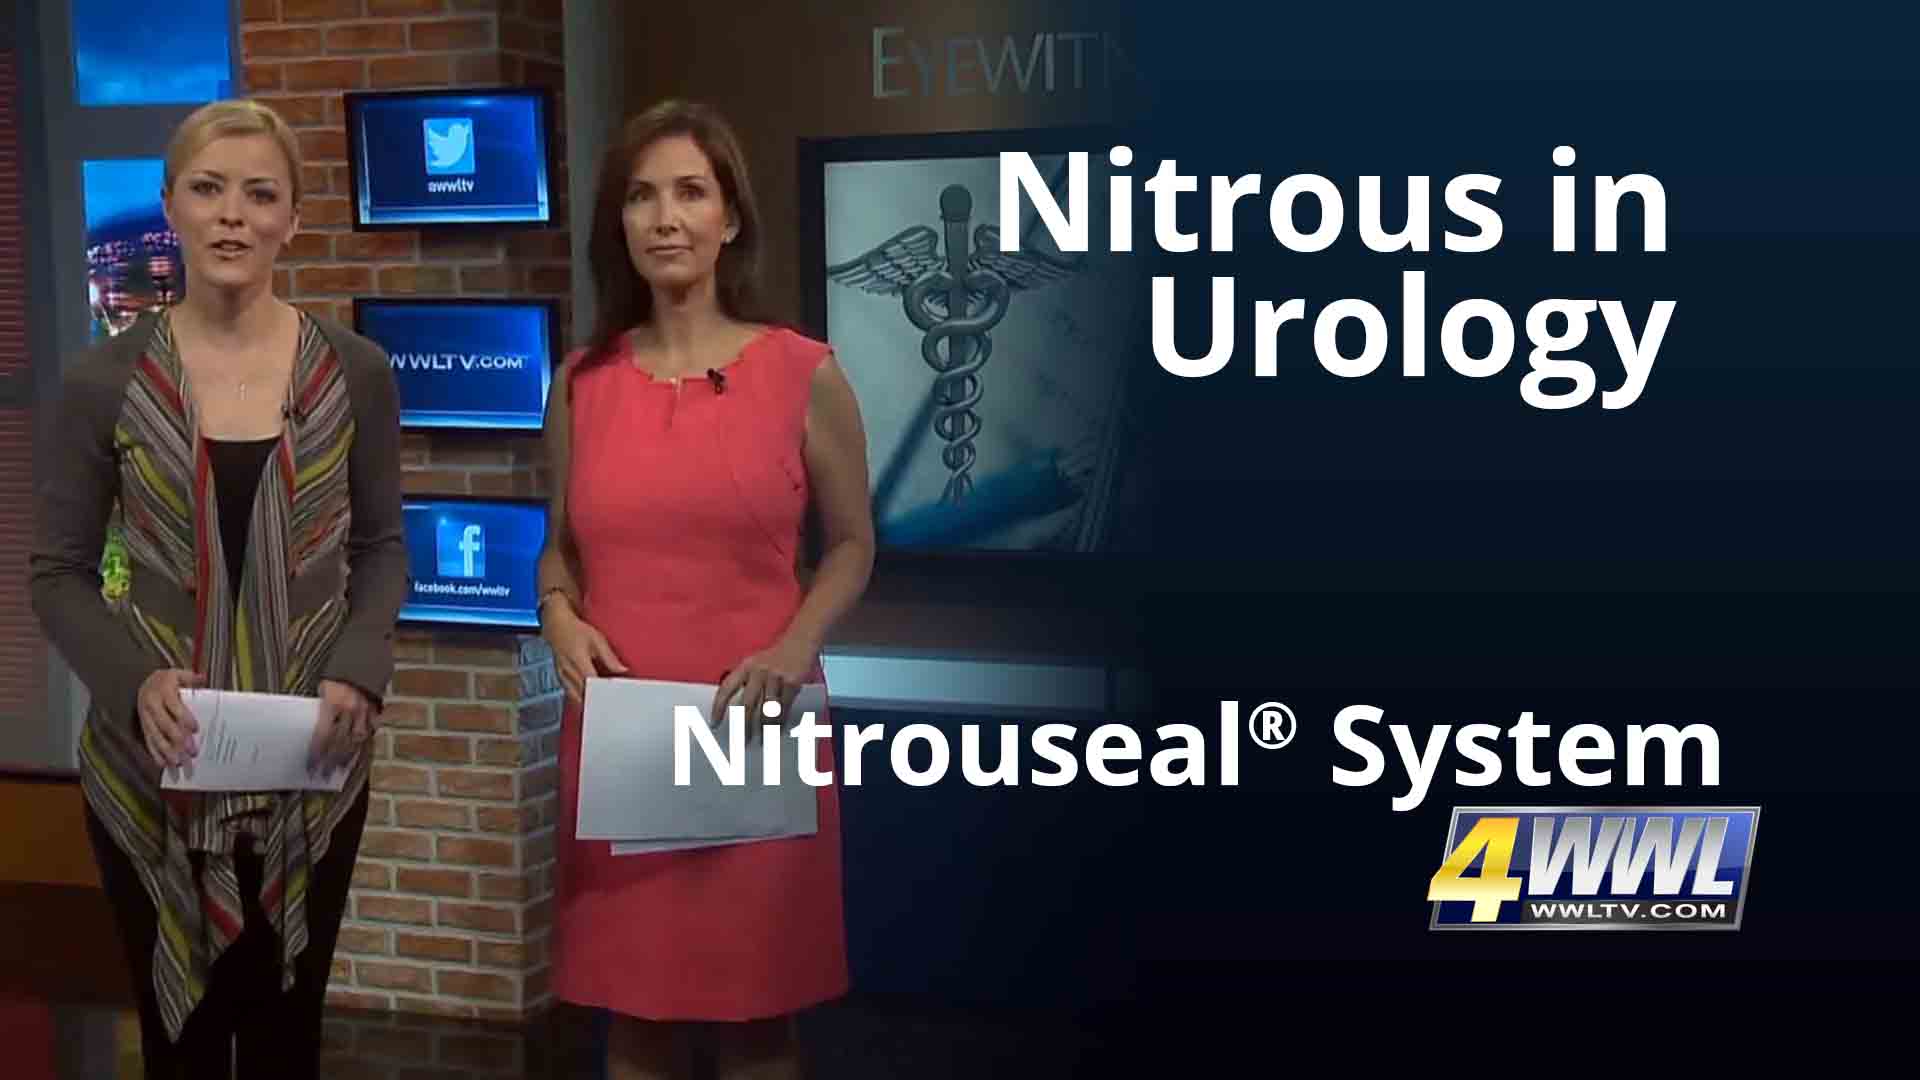 Nitrous Sedation in Urology